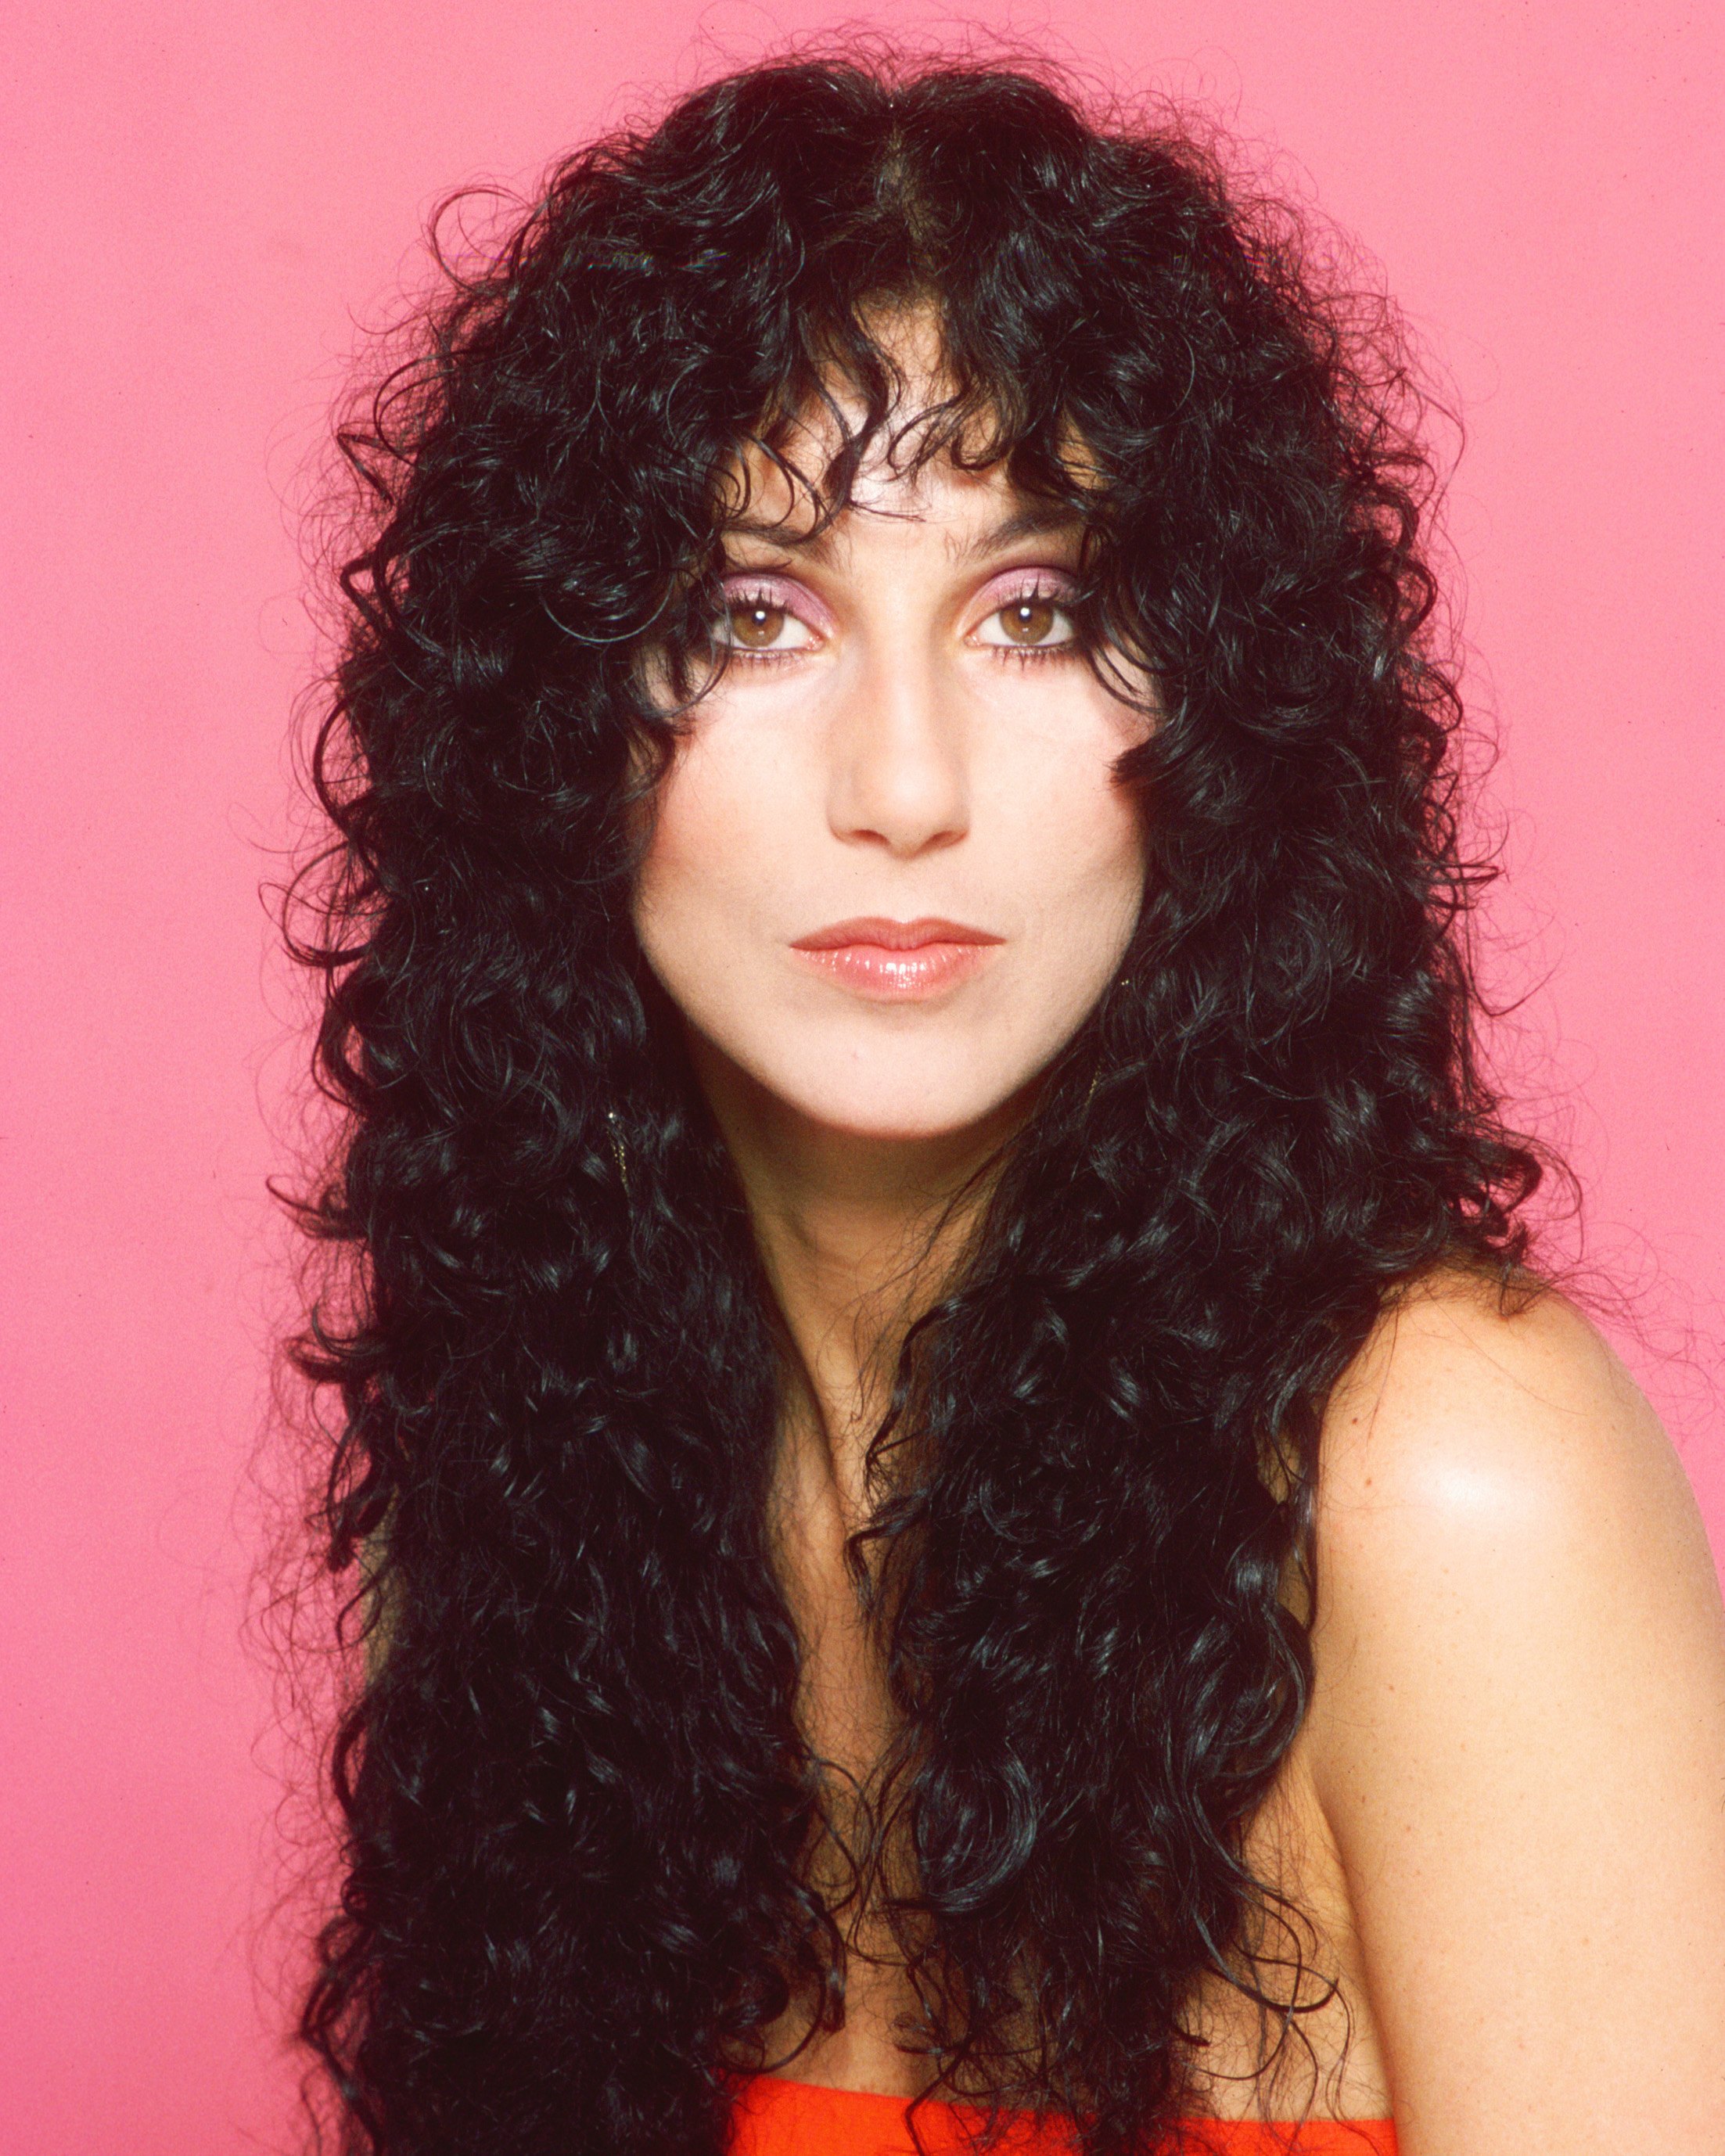 Happy 70th, Cher!